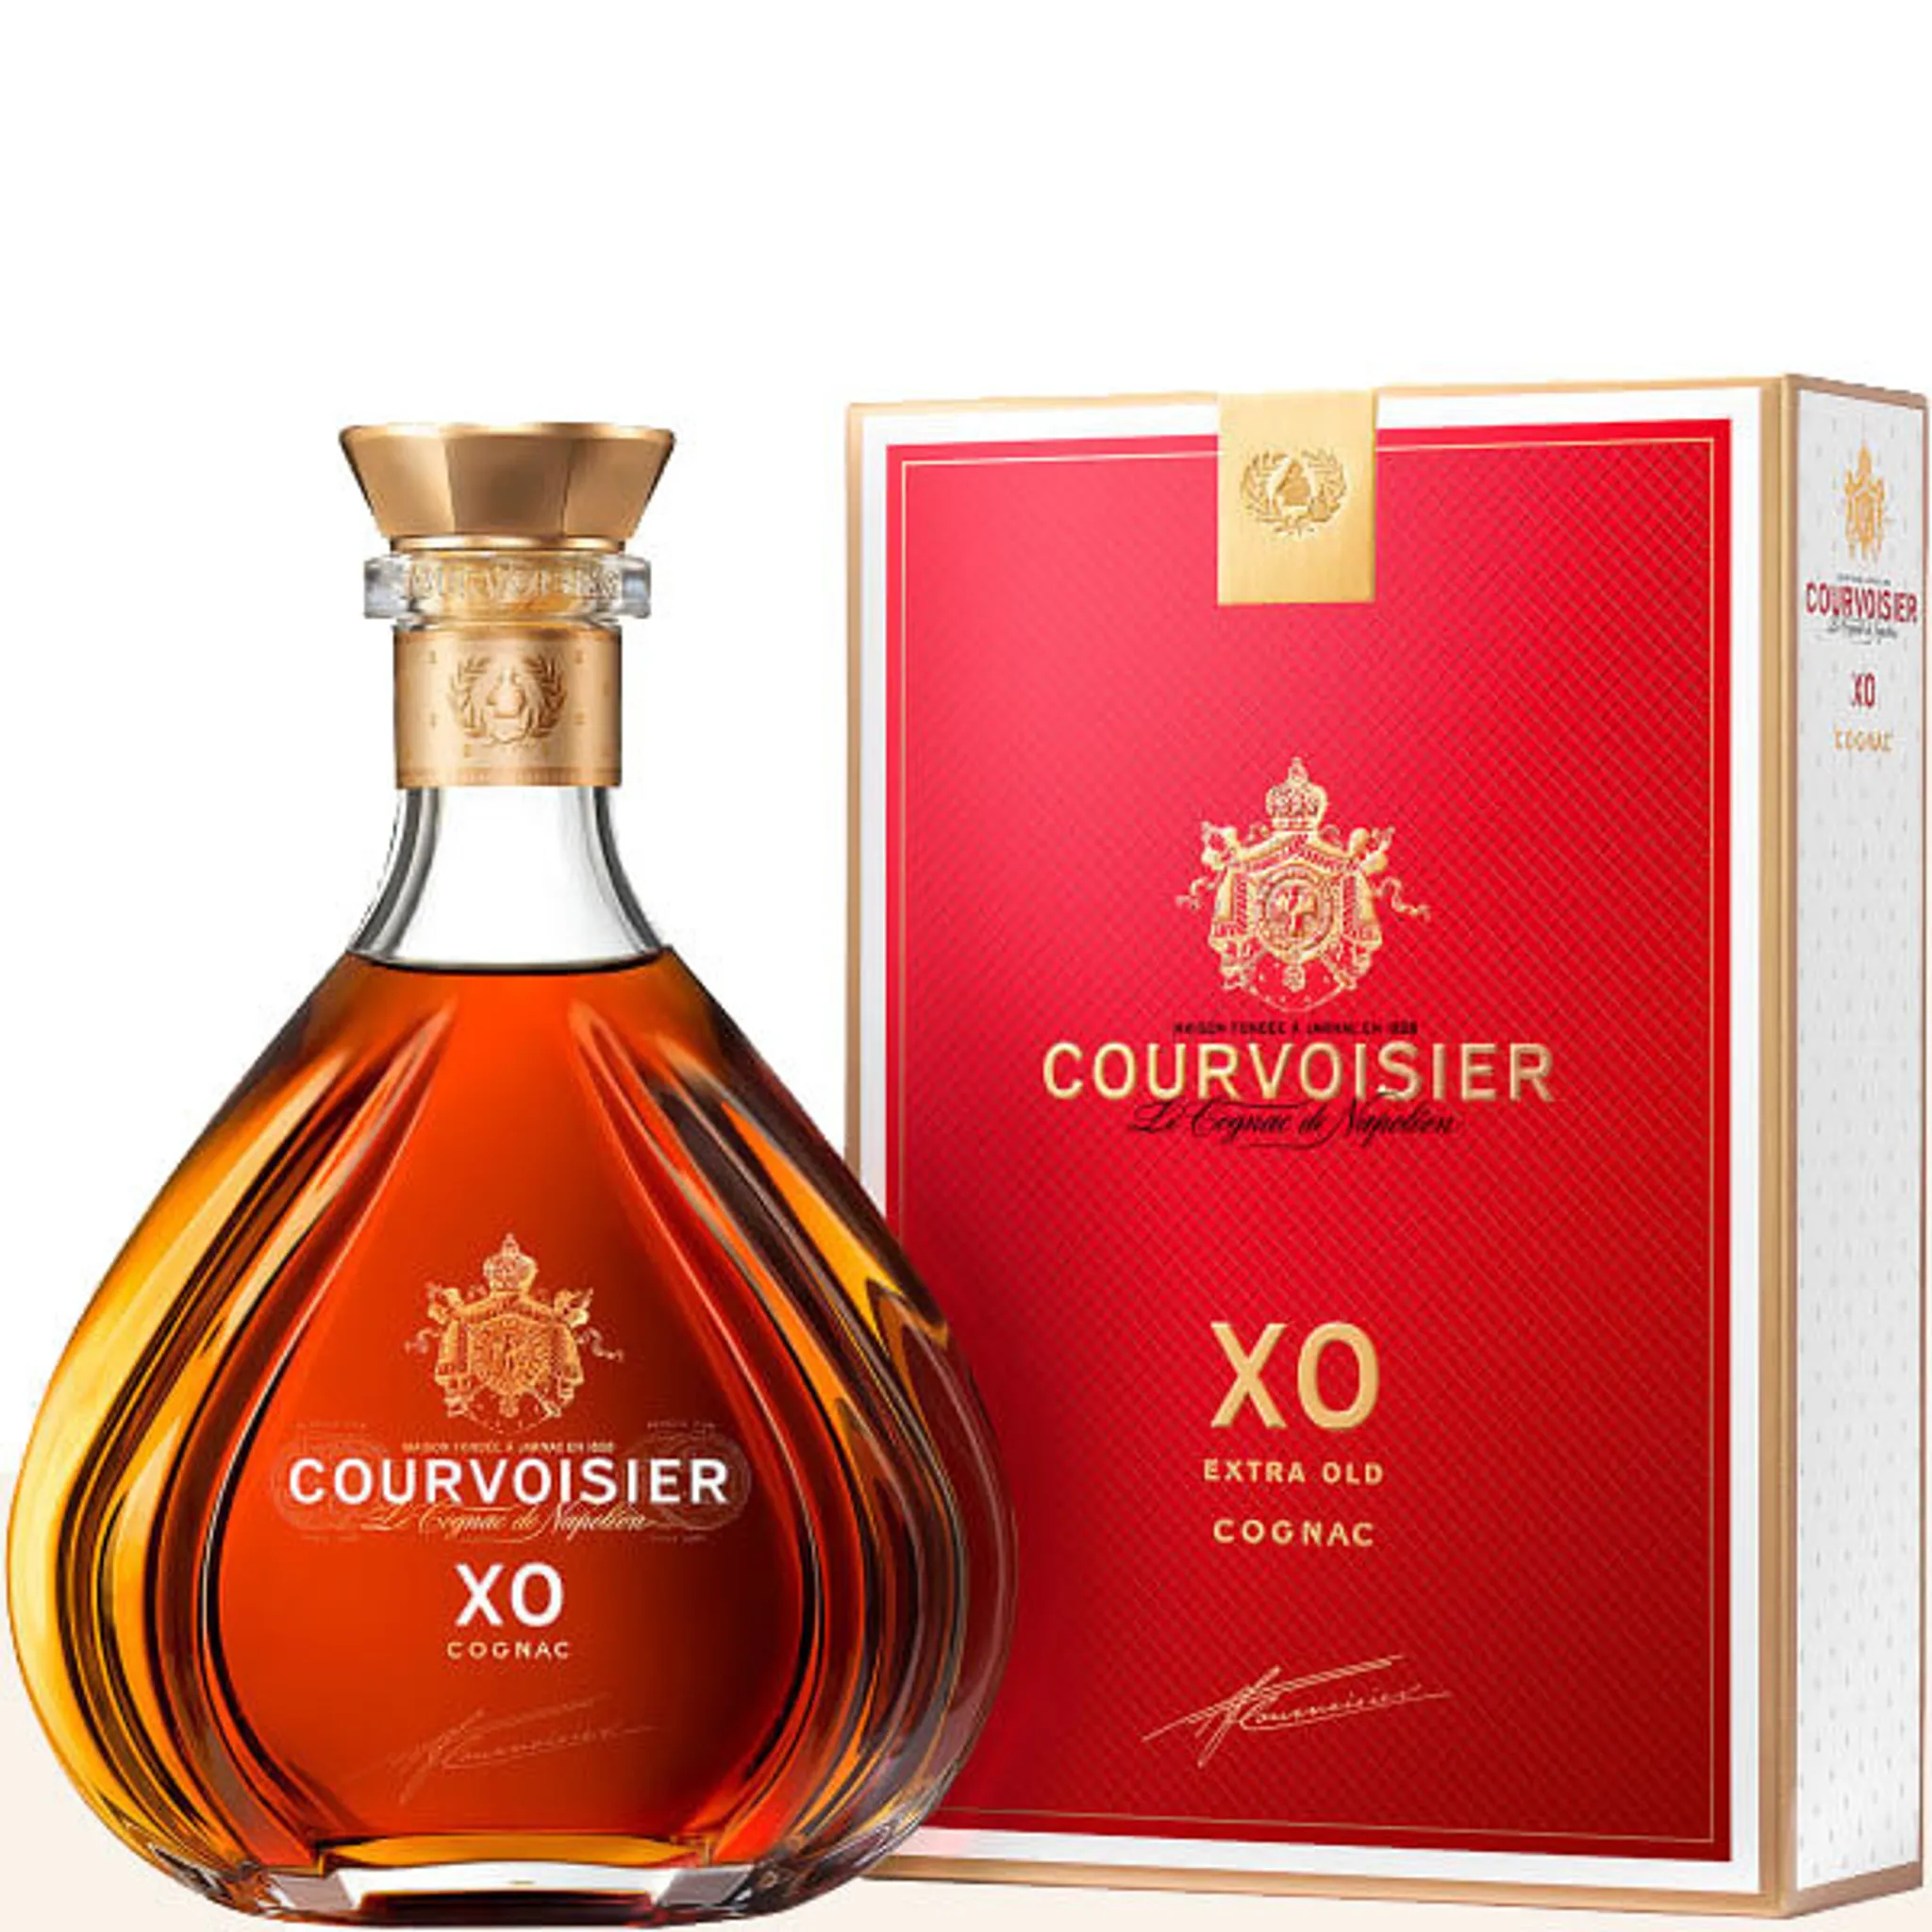 Courvoisier XO Cognac 40% Vol. 0,7l in